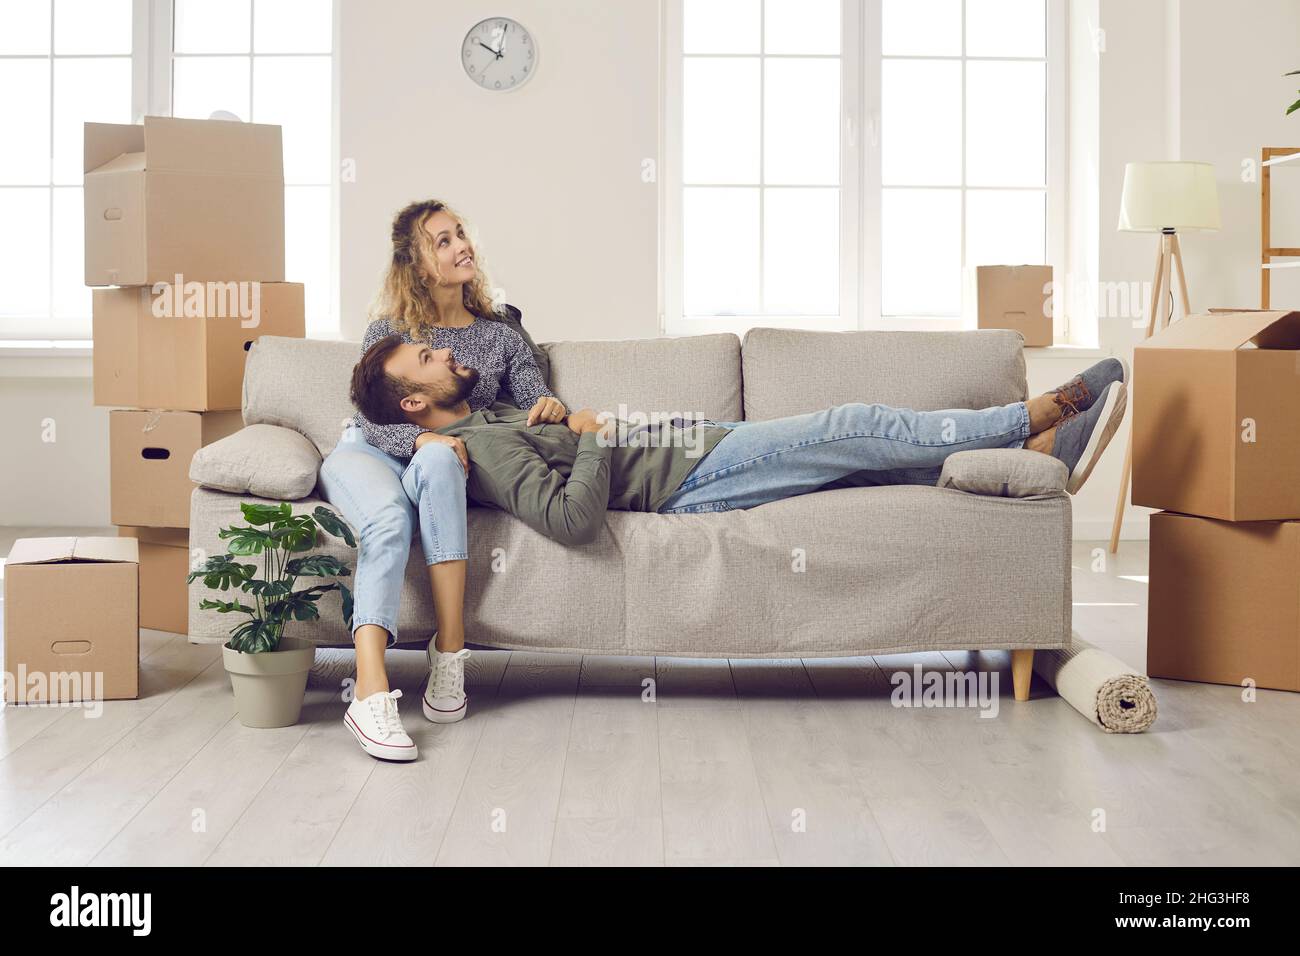 Glückliches junges Paar, das Pause macht und auf dem Sofa sitzt, während es in ihrem neuen Haus umzieht Stockfoto